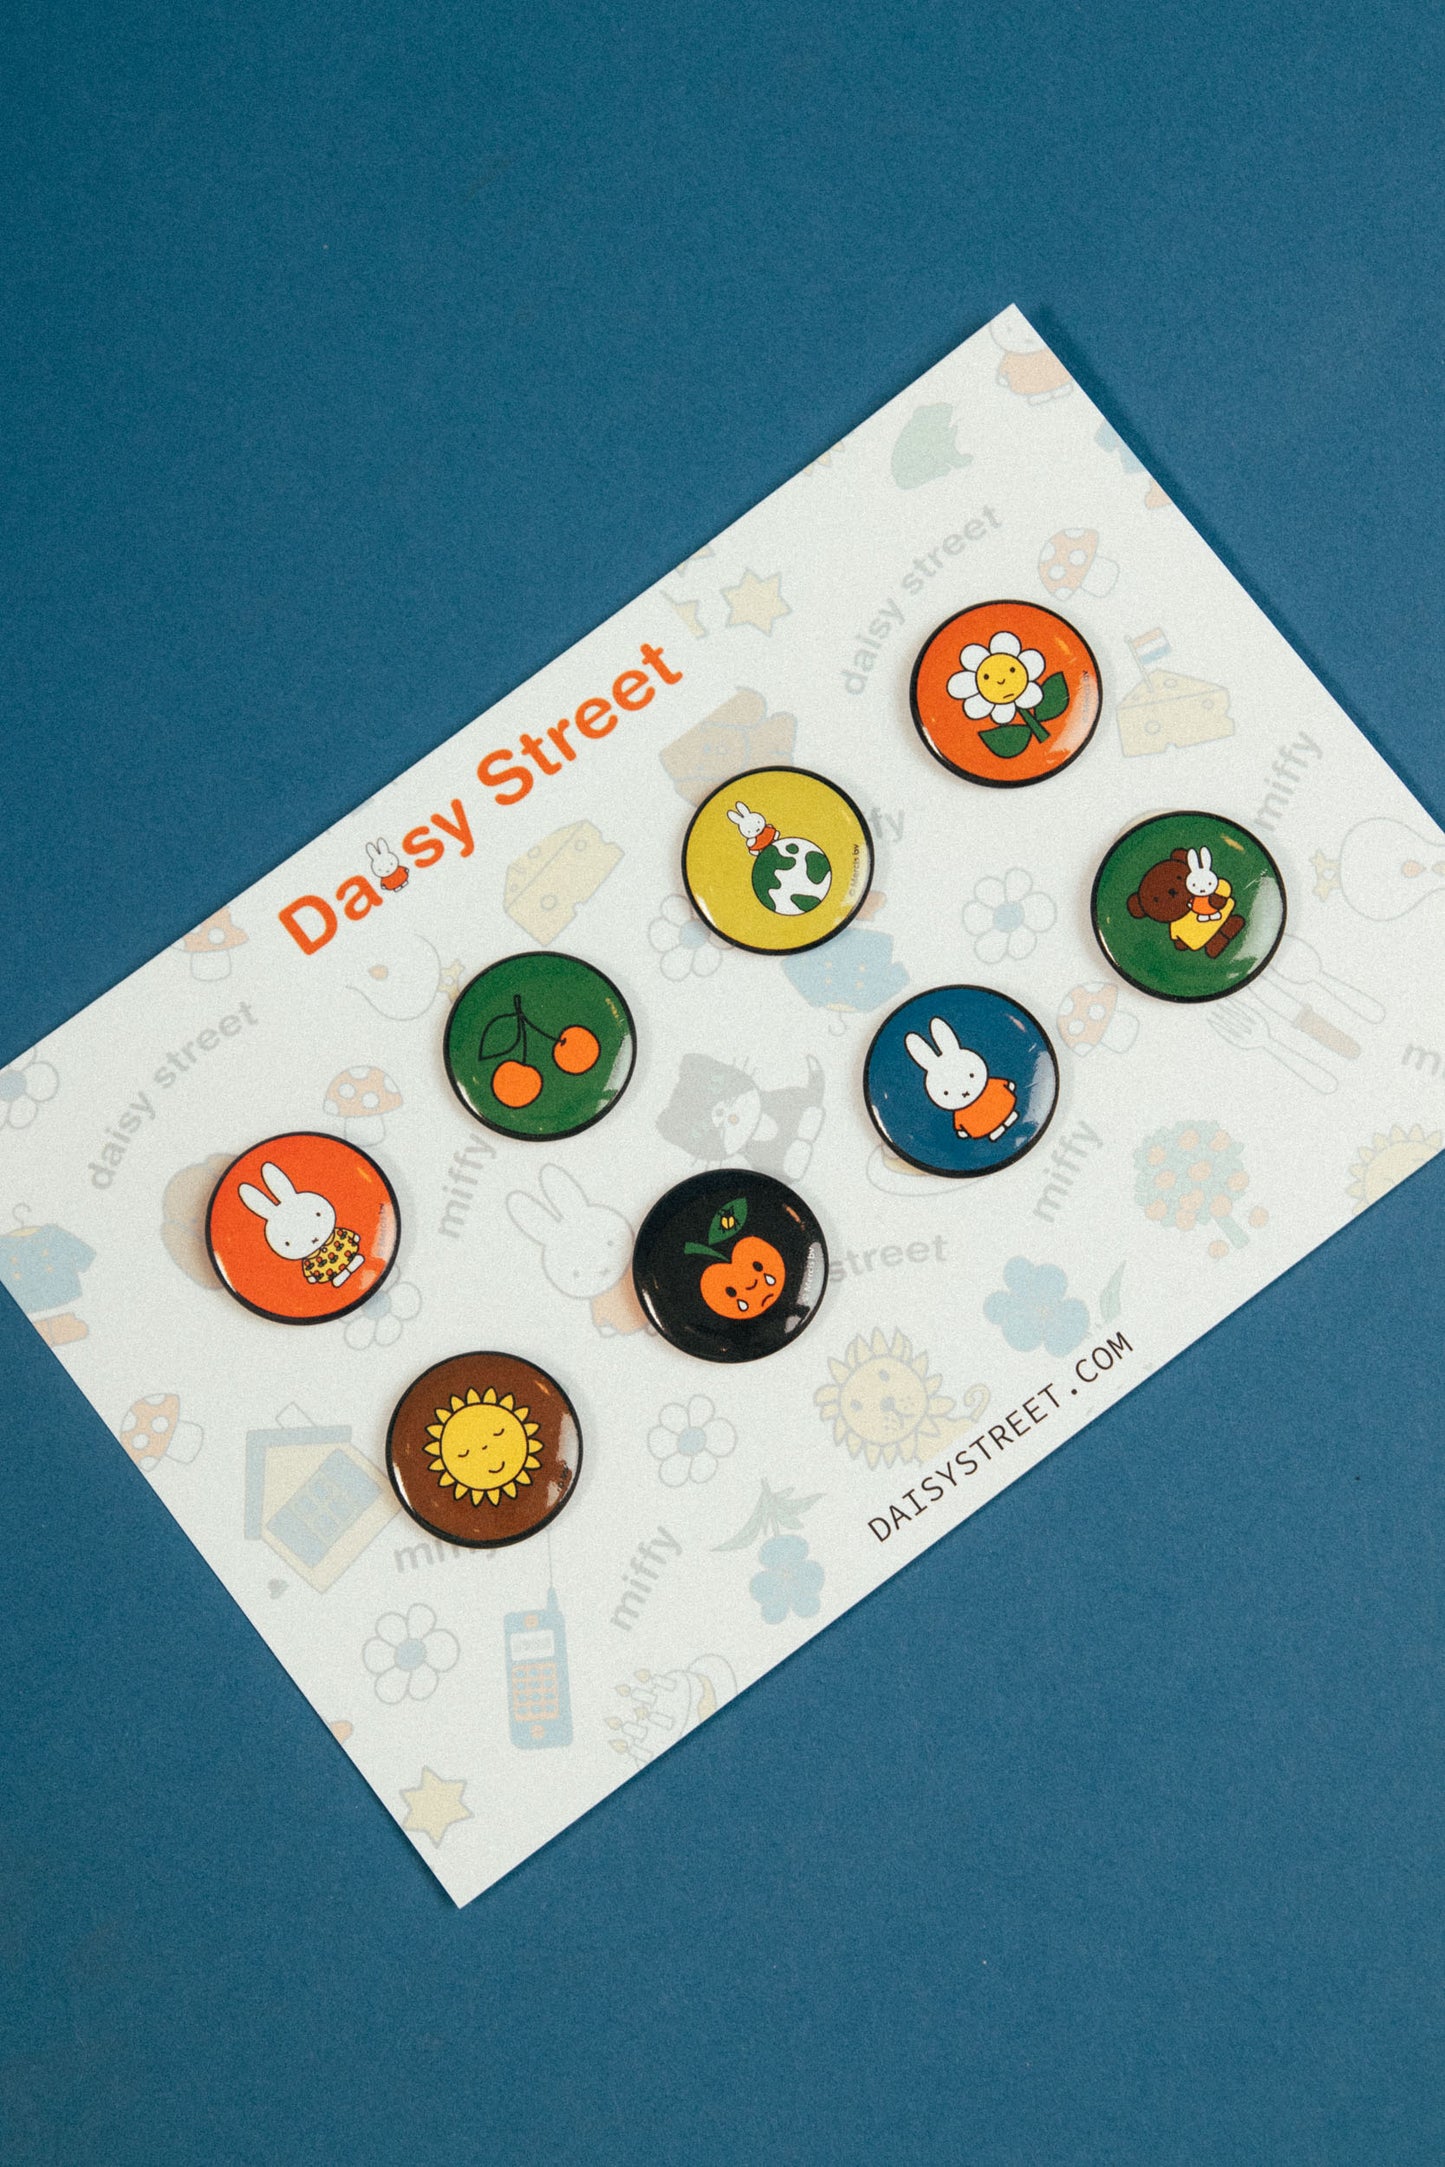 Miffy x Daisy Street - Miffy Set of 8 Mini Badges